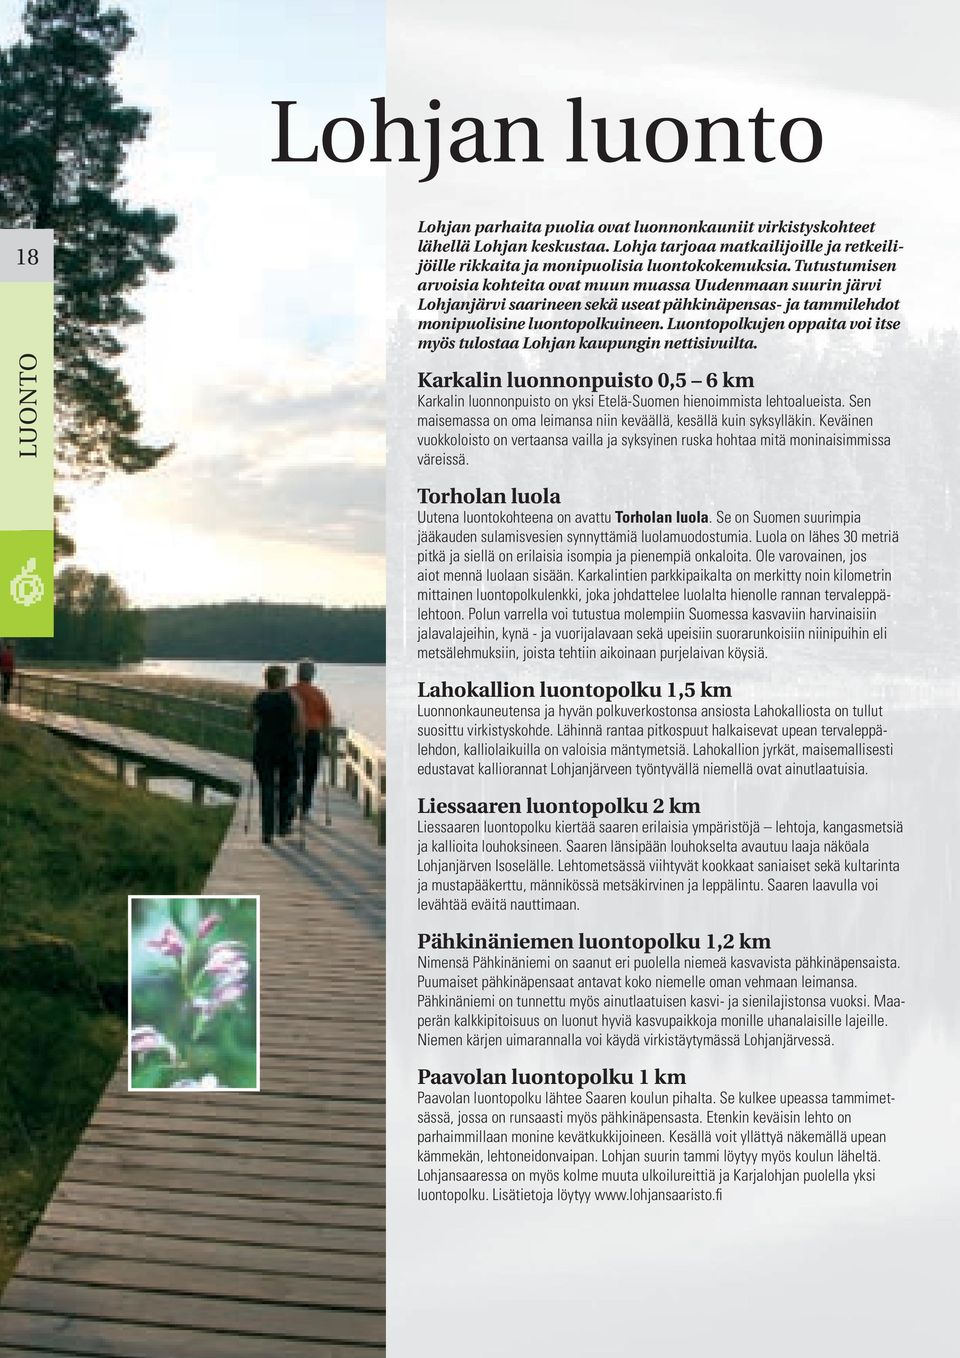 Luontopolkujen oppaita voi itse myös tulostaa Lohjan kaupungin nettisivuilta. Karkalin luonnonpuisto 0,5 6 km Karkalin luonnonpuisto on yksi Etelä-Suomen hienoimmista lehtoalueista.